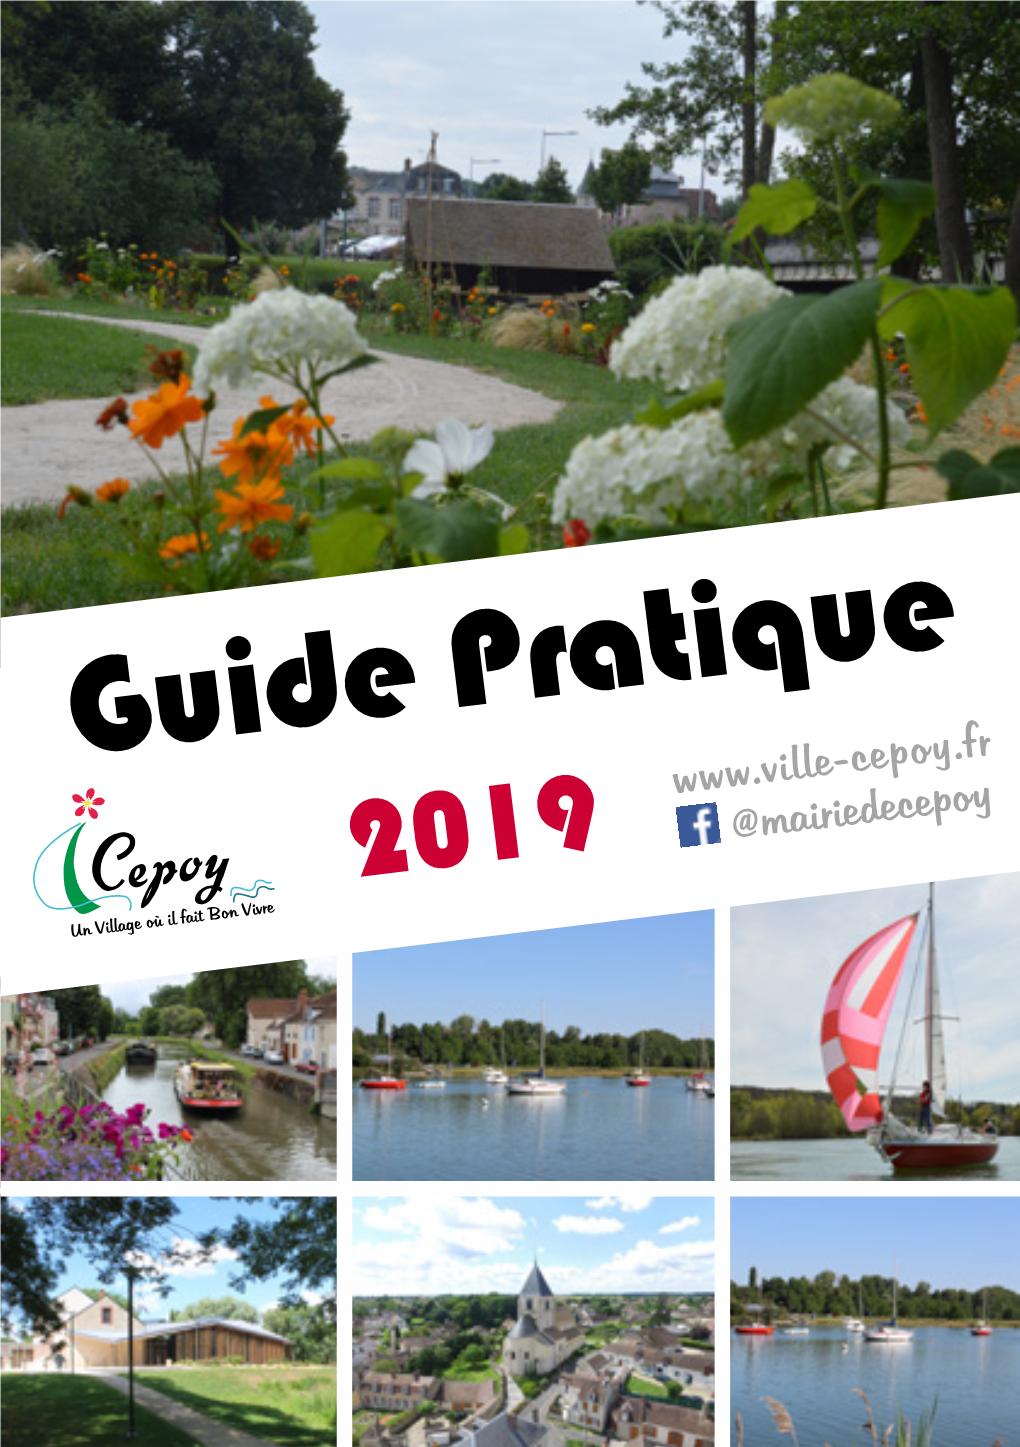 Guide Pratique 2019 @Mairiedecepoy 2 Numéros Utiles